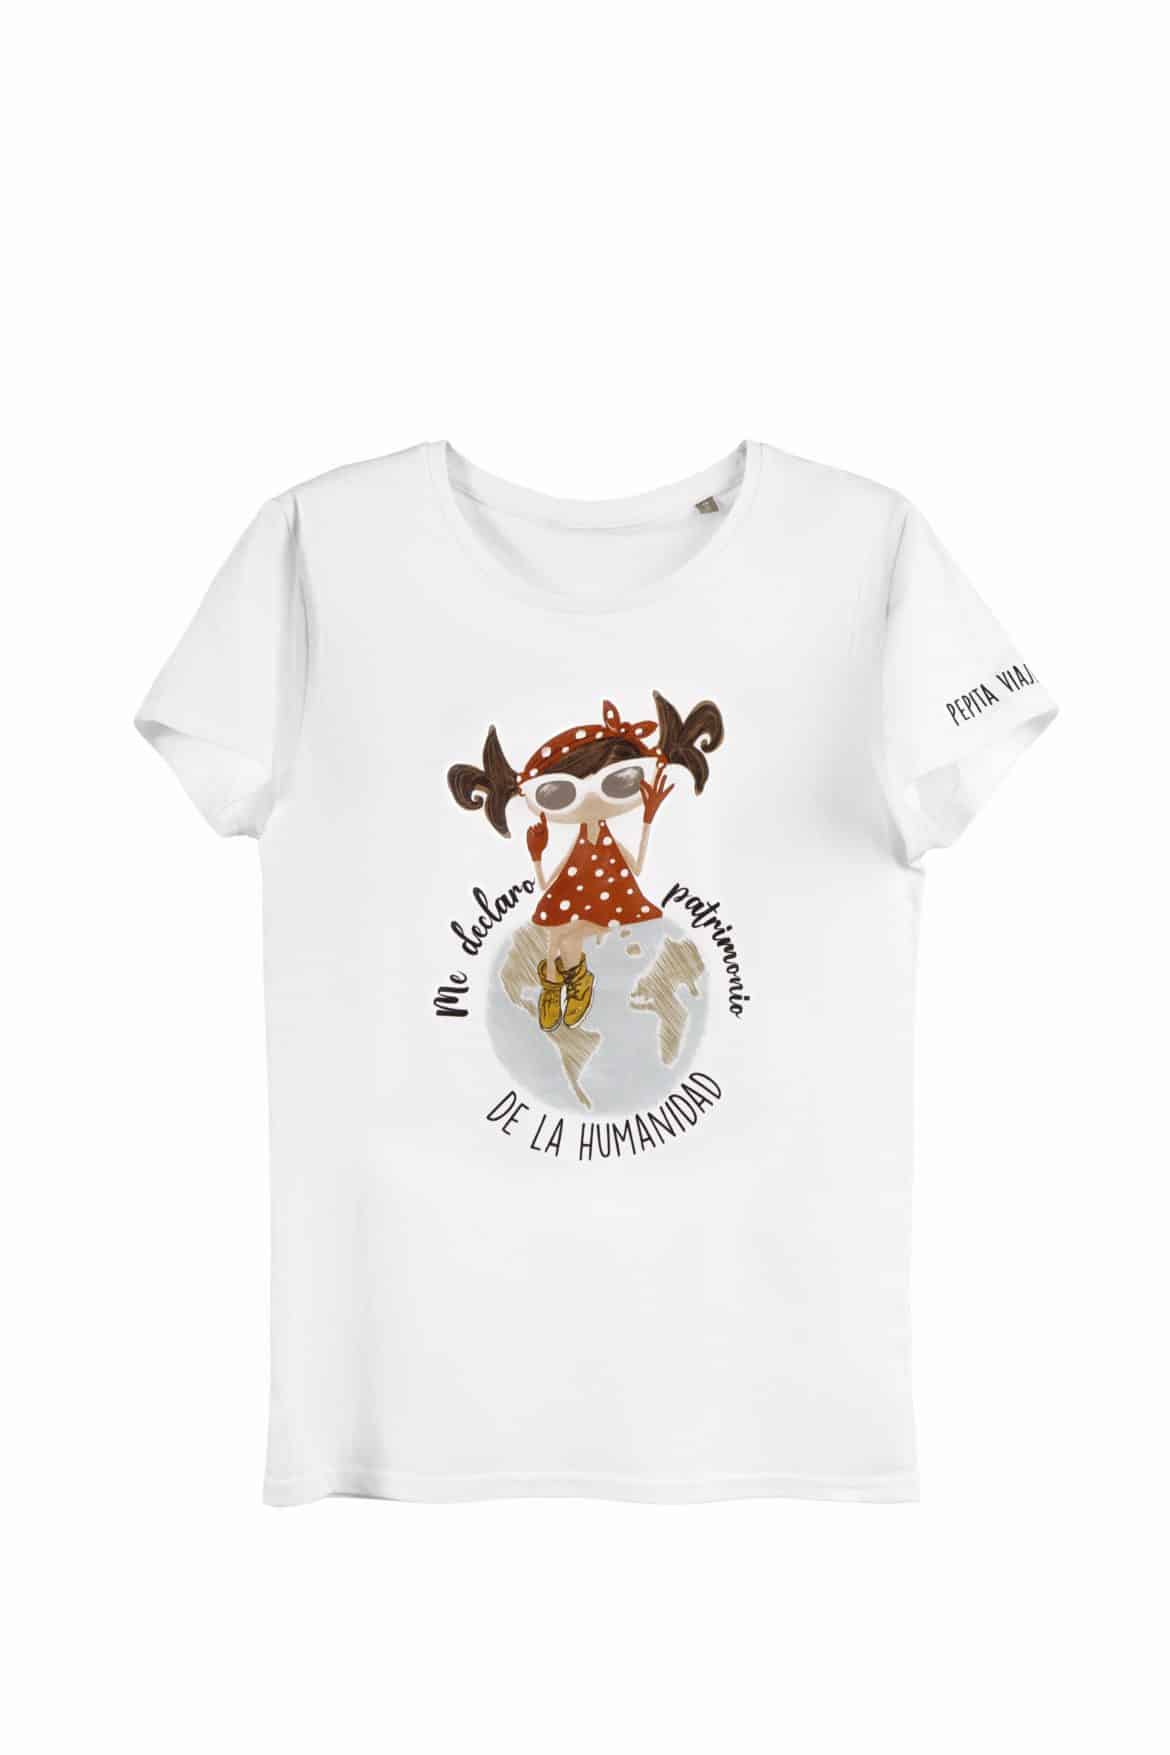 Camiseta de algodón orgánico de la marca Pepita Viajera en color blanco para aquellos que se declaran Patrimonio de la humanidad. Vista general de producto